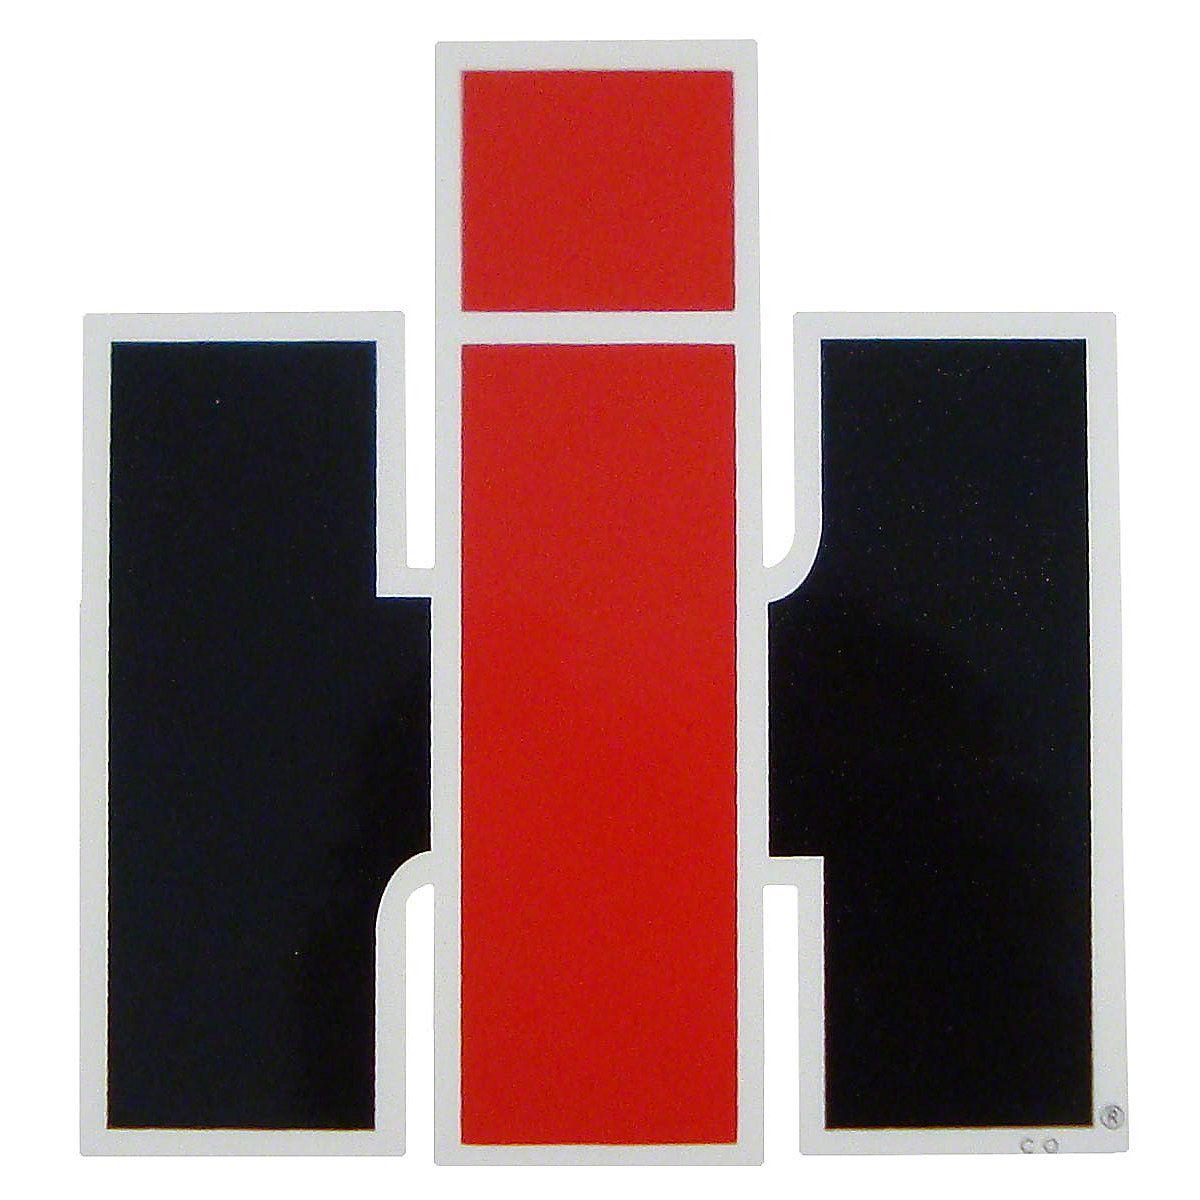 IHC Logo - DEC463 - IH LOGO DECAL 4-1/2 WIDE X 4-3/4 TALL